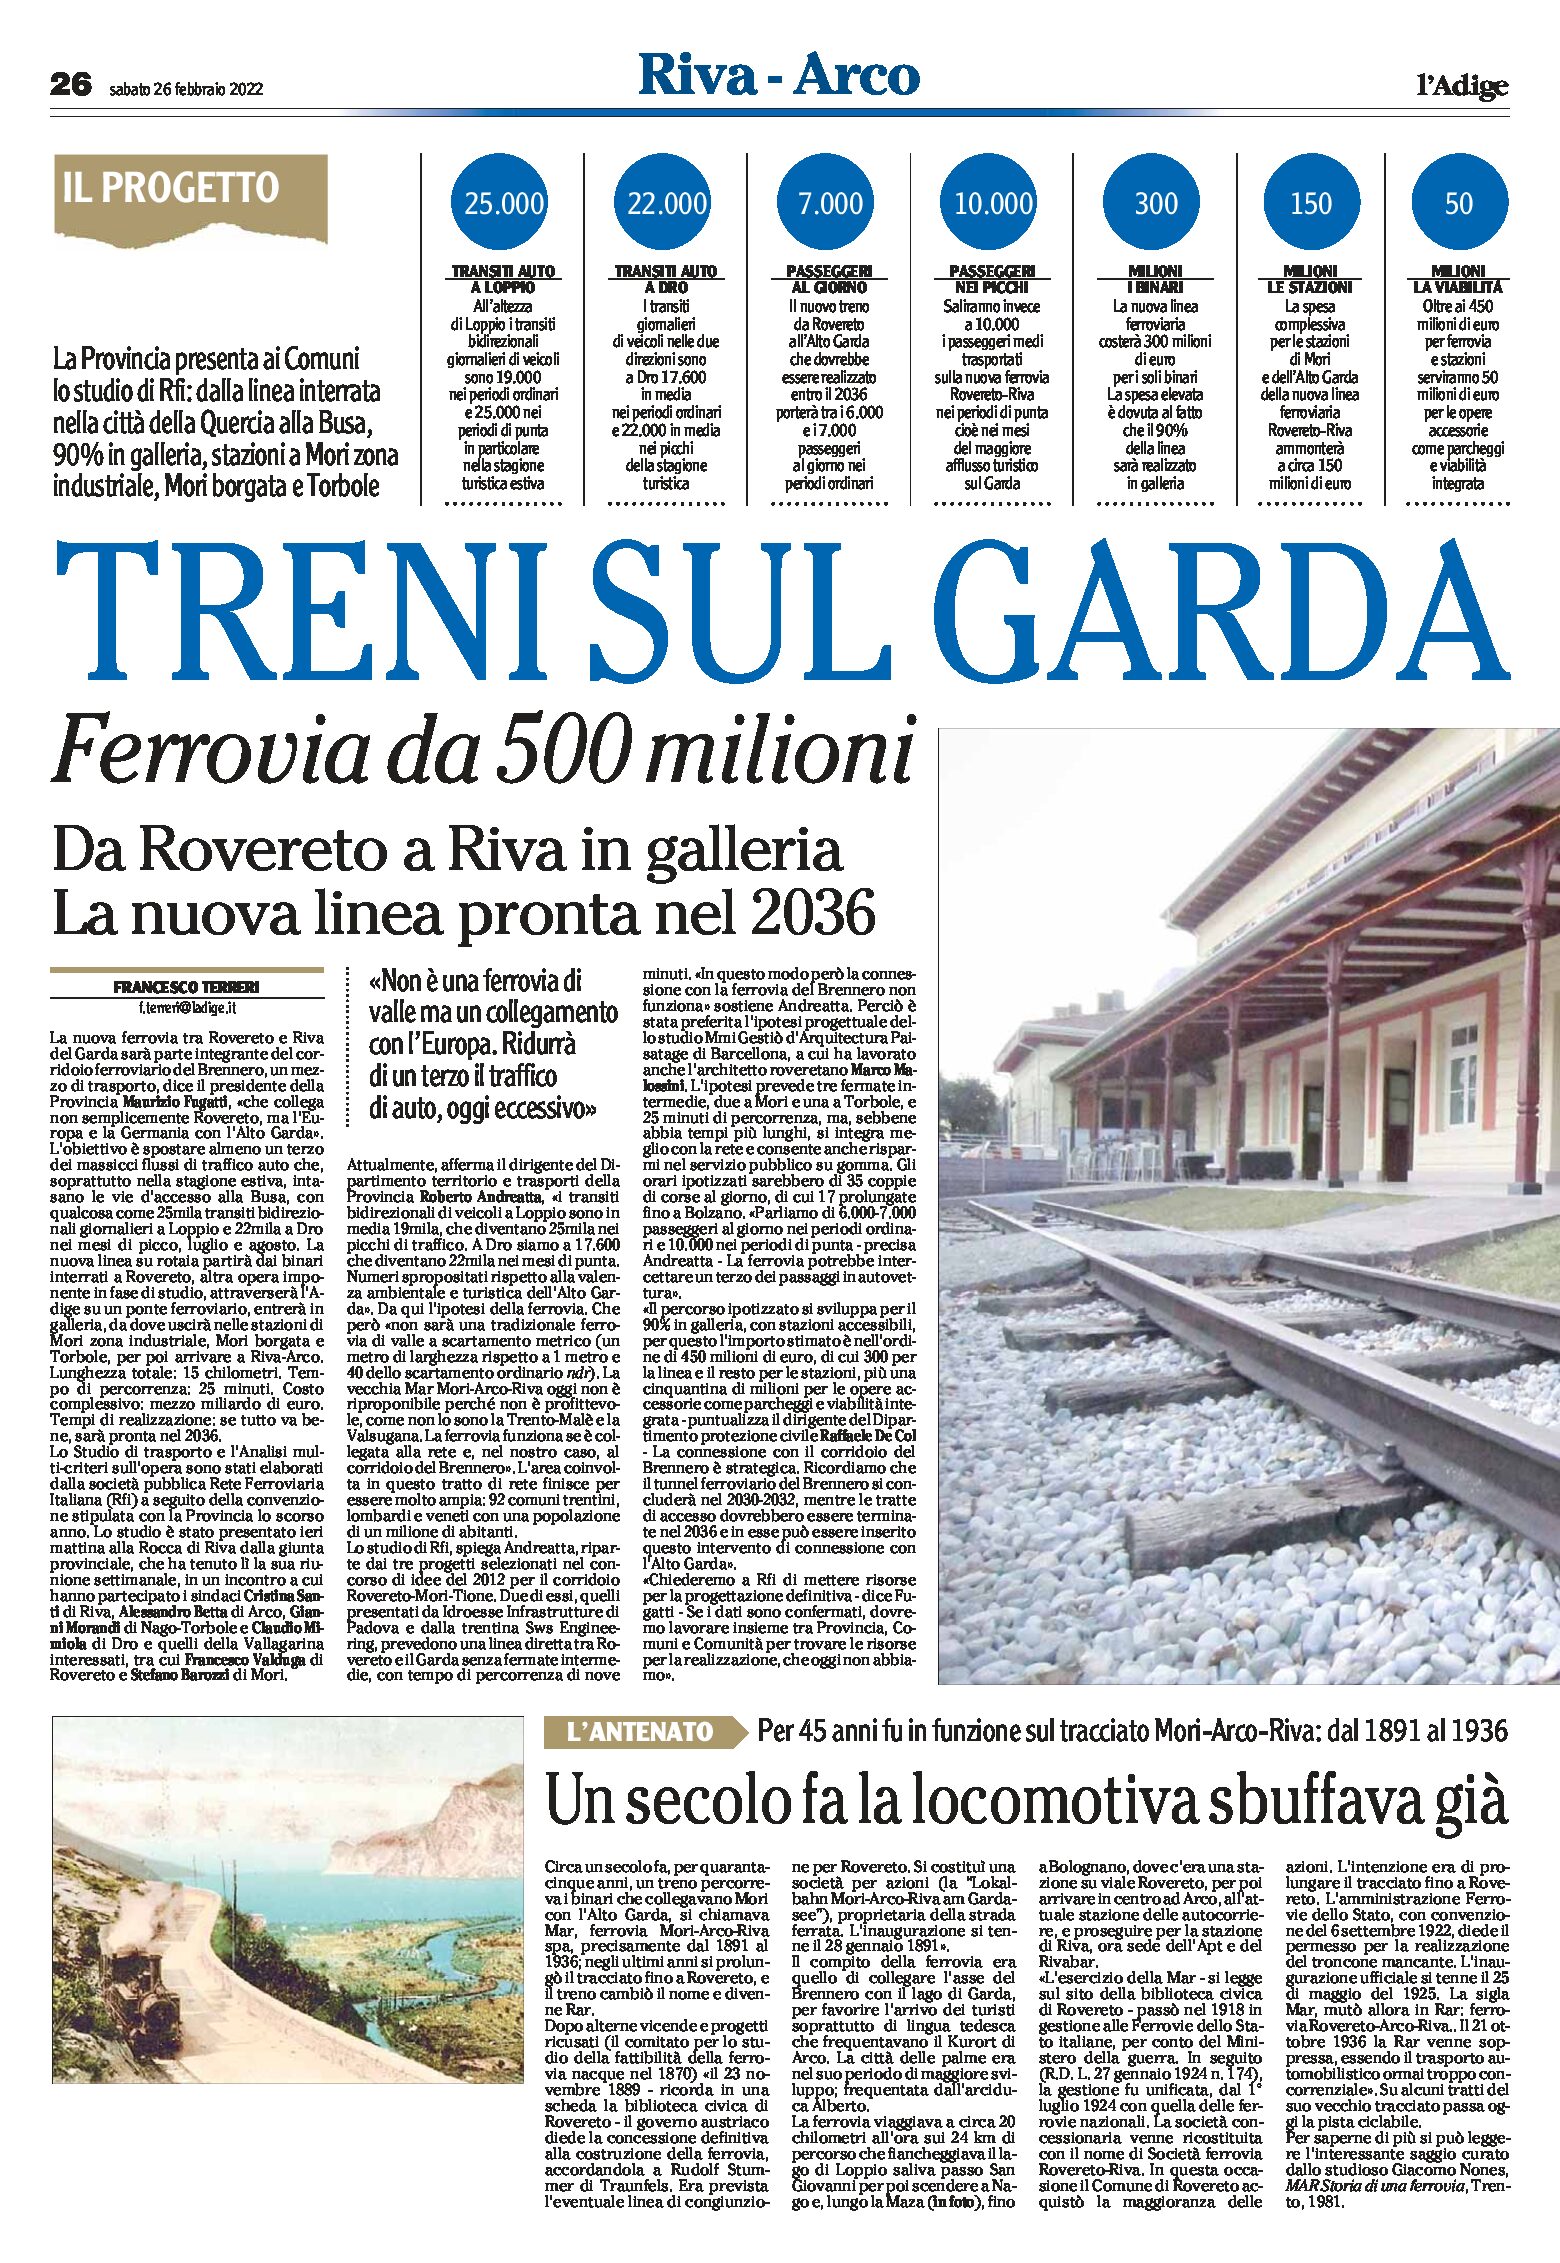 Treni sul Garda: ferrovia da 500 milioni. Da Rovereto a Riva in galleria